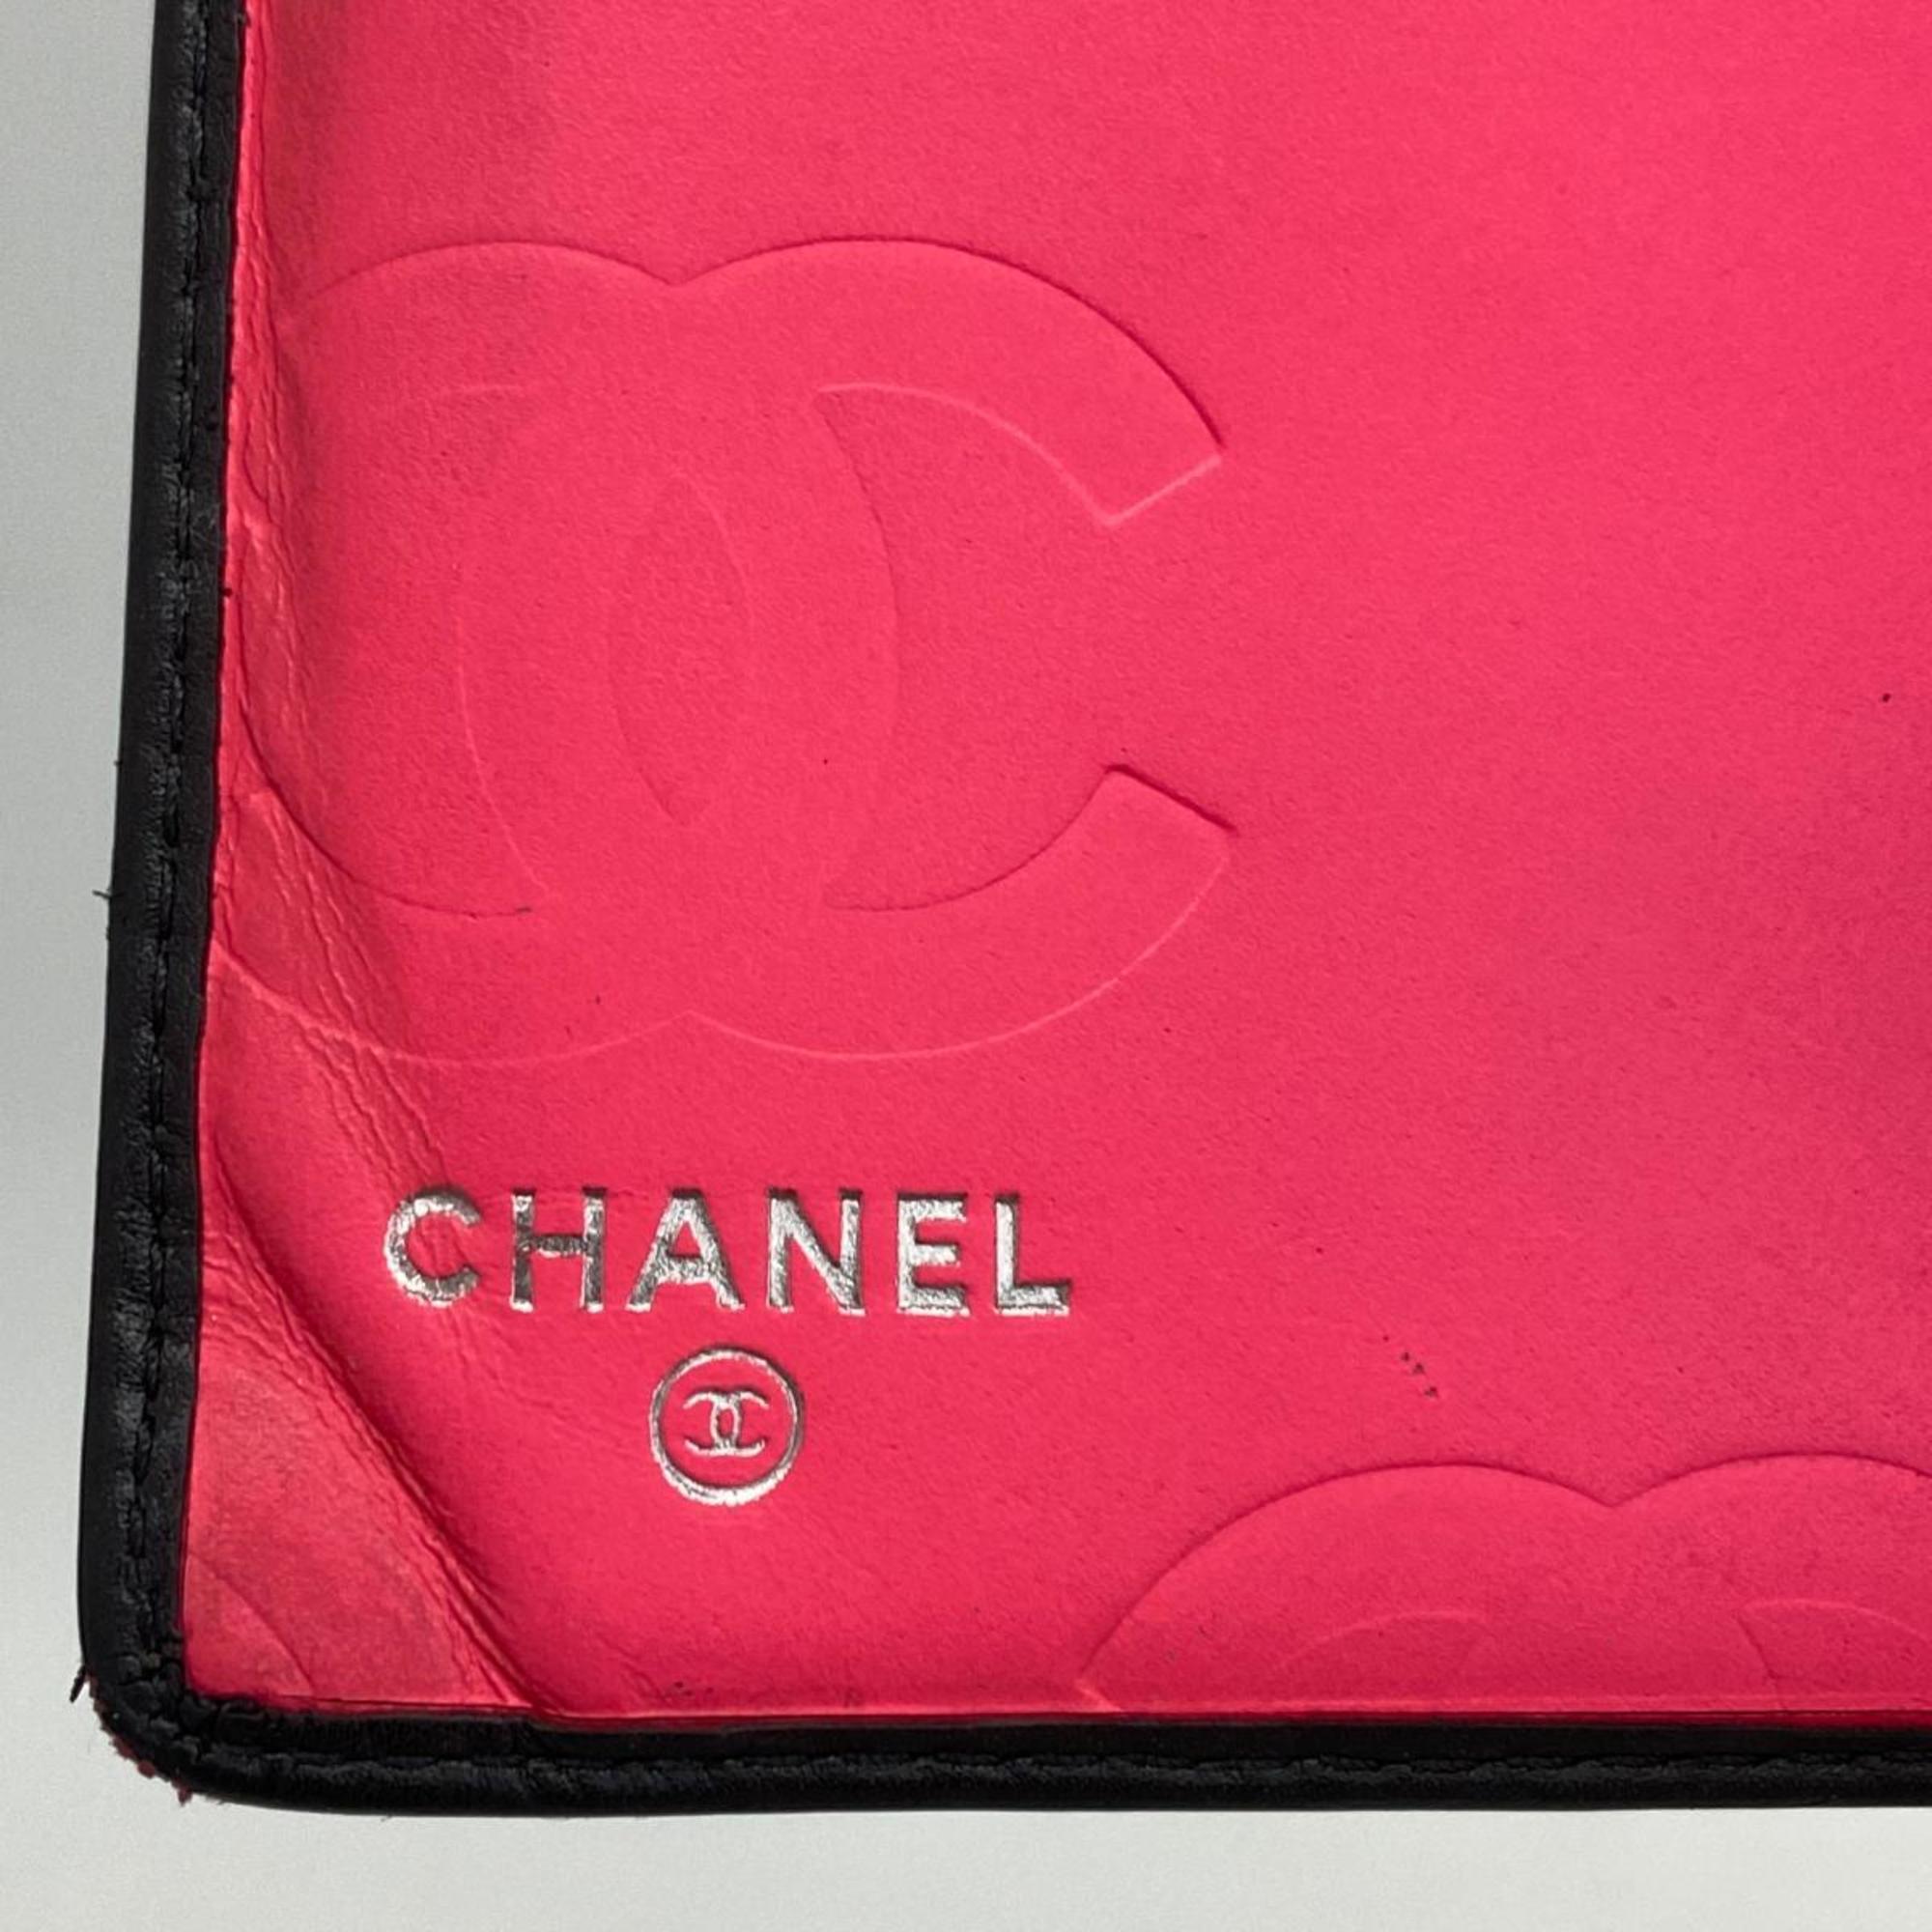 シャネル(Chanel) シャネル 長財布 カンボン ラムスキン パテントレザー ブラック ピンク   レディース